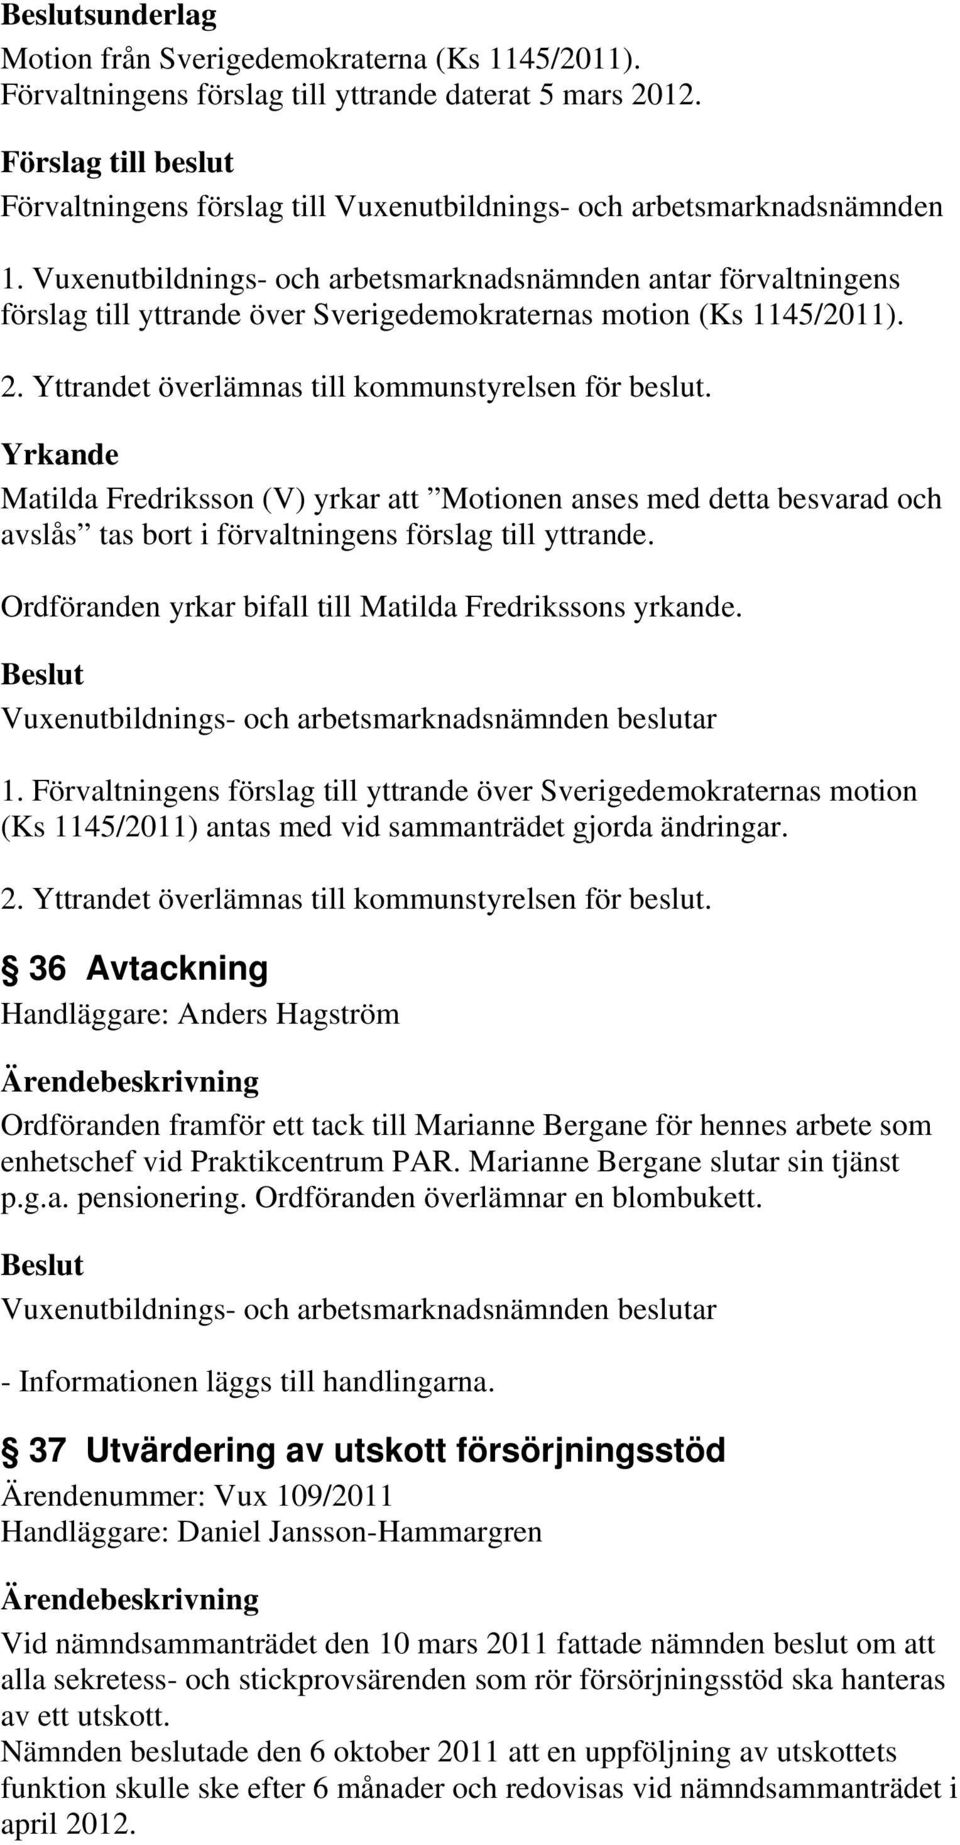 Ordföranden yrkar bifall till Matilda Fredrikssons yrkande. 1. Förvaltningens förslag till yttrande över Sverigedemokraternas motion (Ks 1145/2011) antas med vid sammanträdet gjorda ändringar. 2.